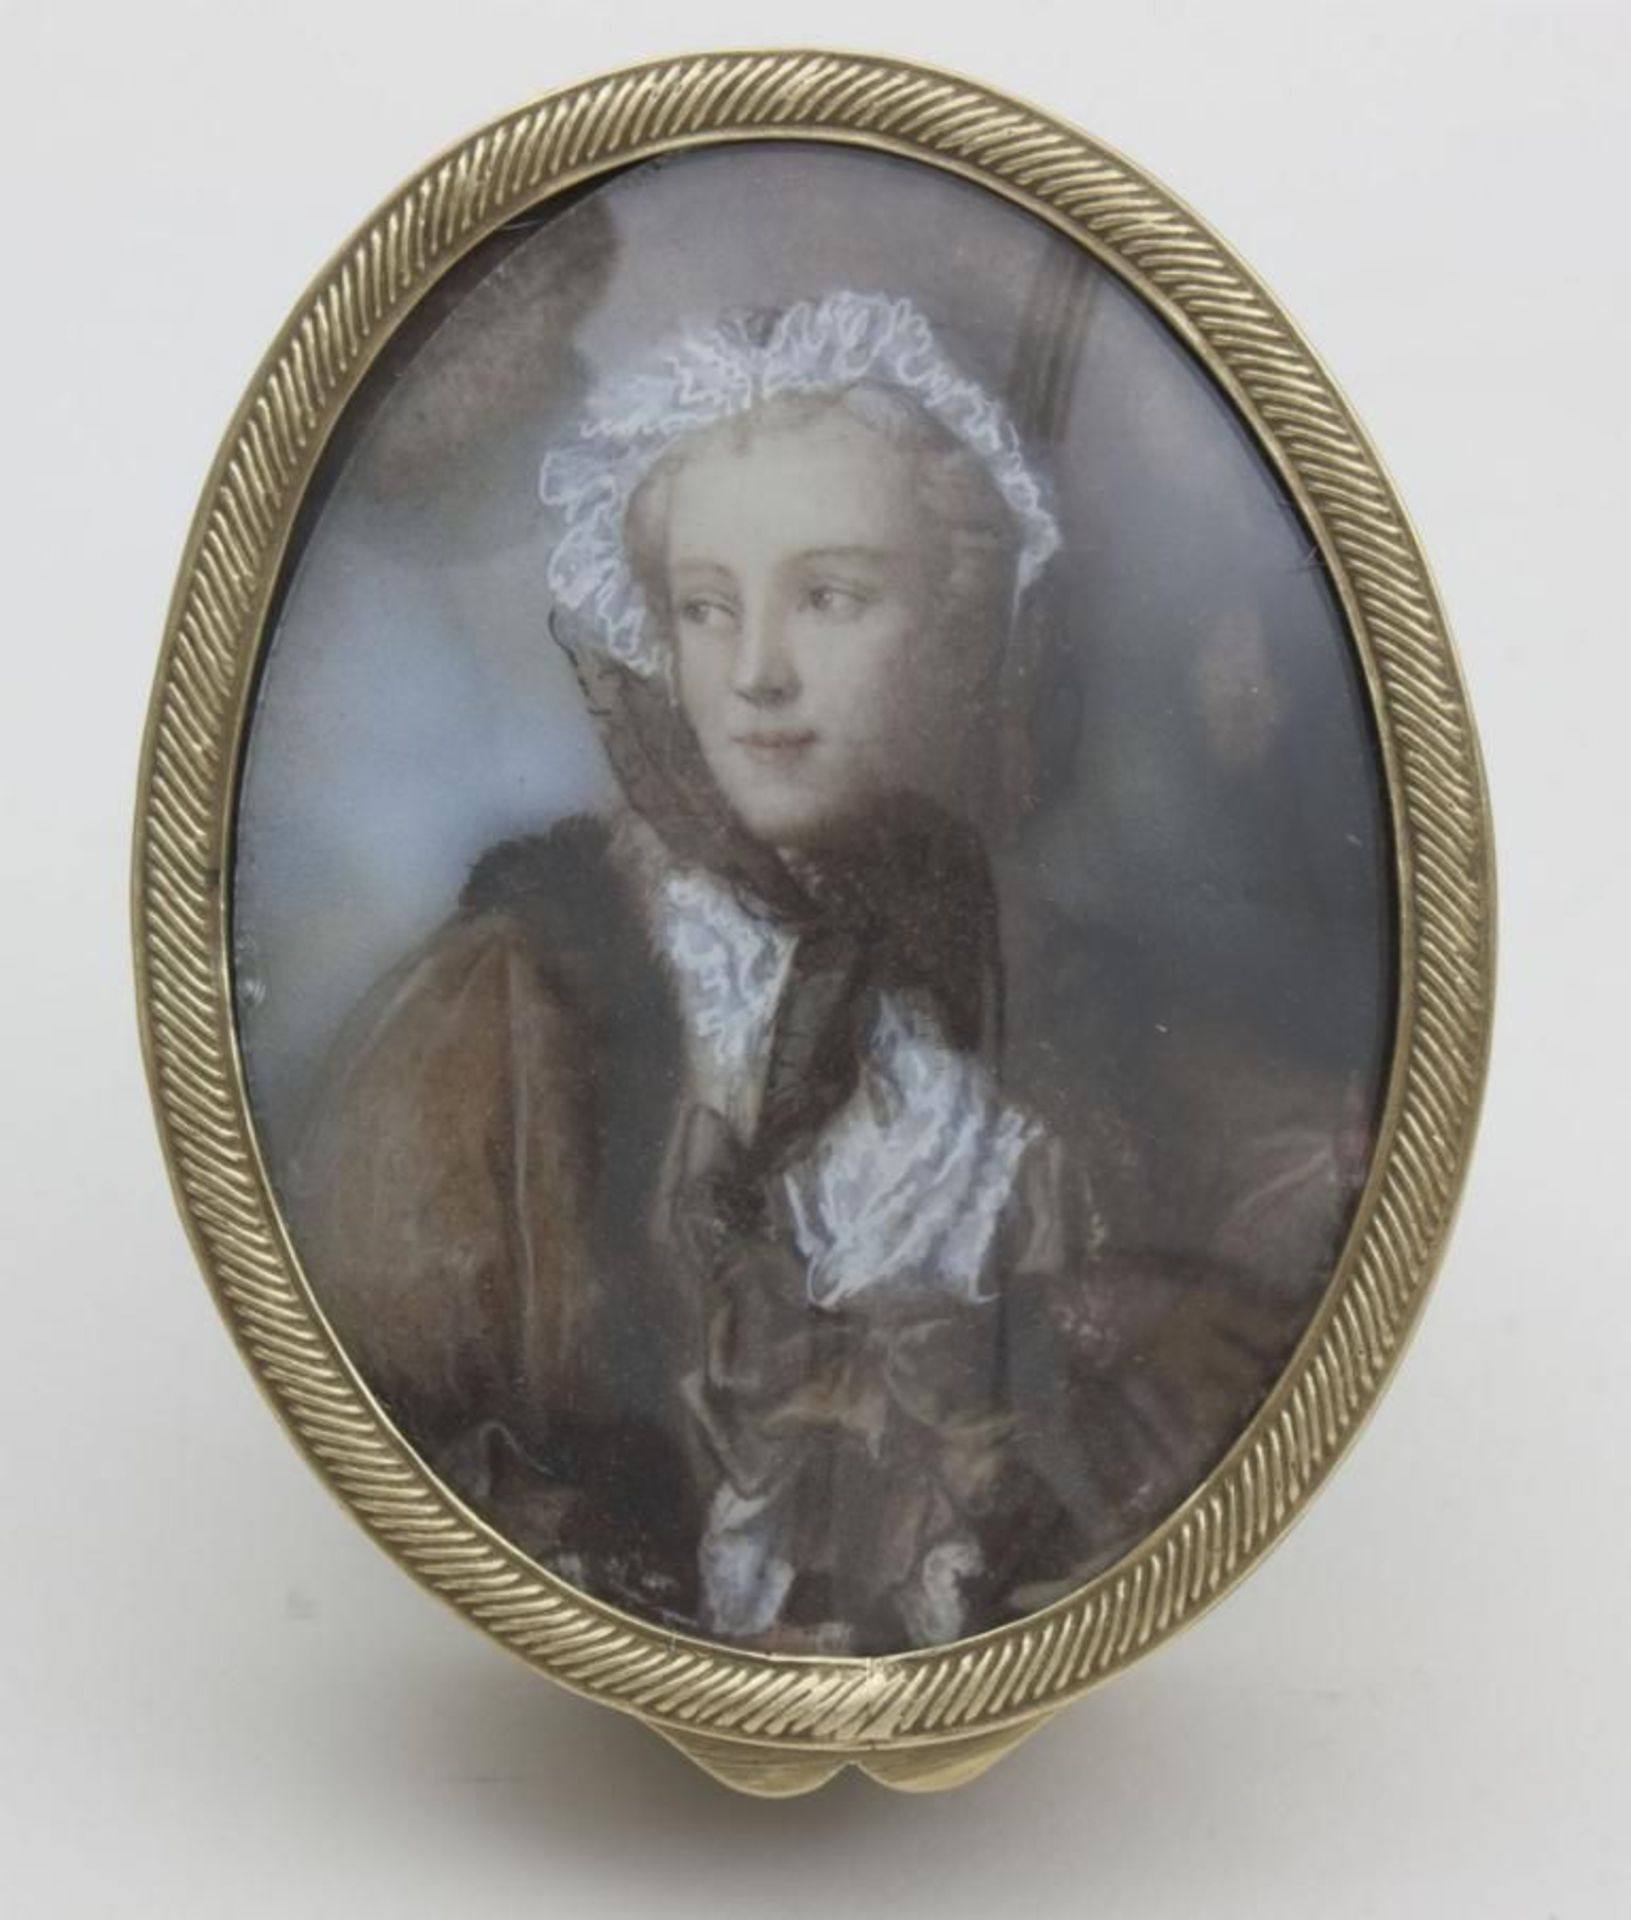 Dose mit Miniaturporträt der Maria Leszczynska, 19. Jh.  ovale Bronzedose mit umlaufendem